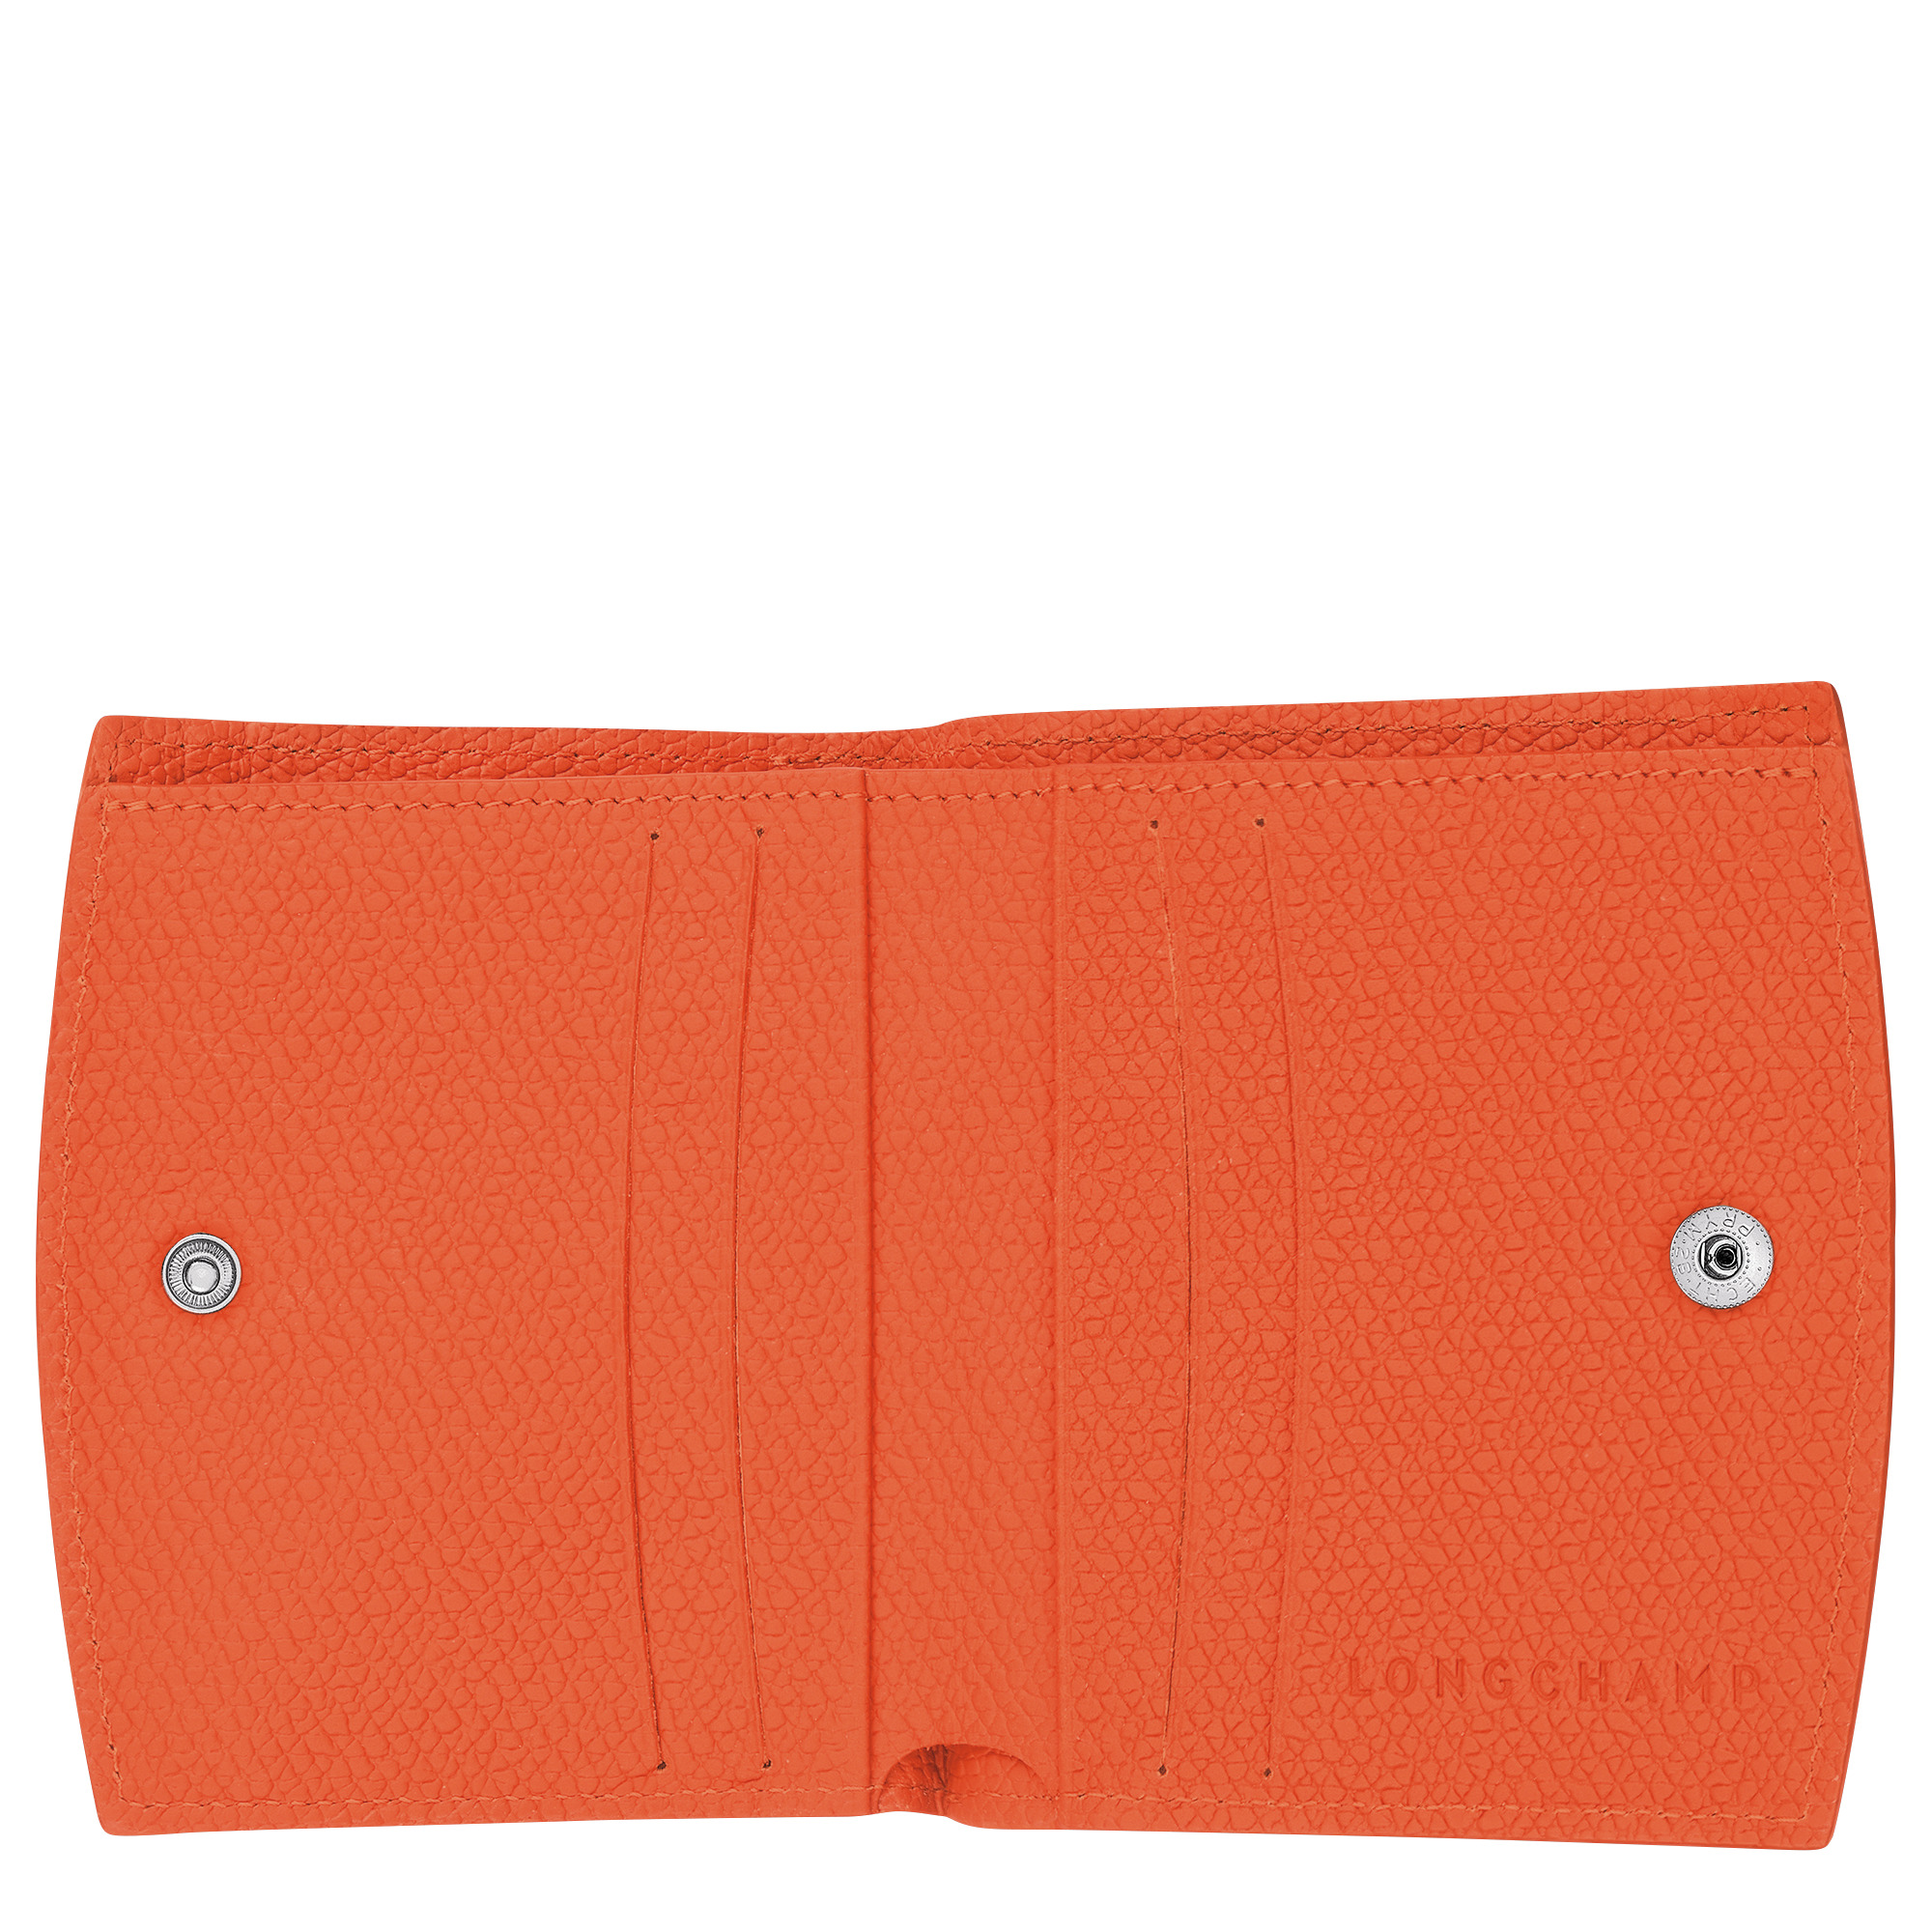 Roseau Wallet Orange - Leather - 3